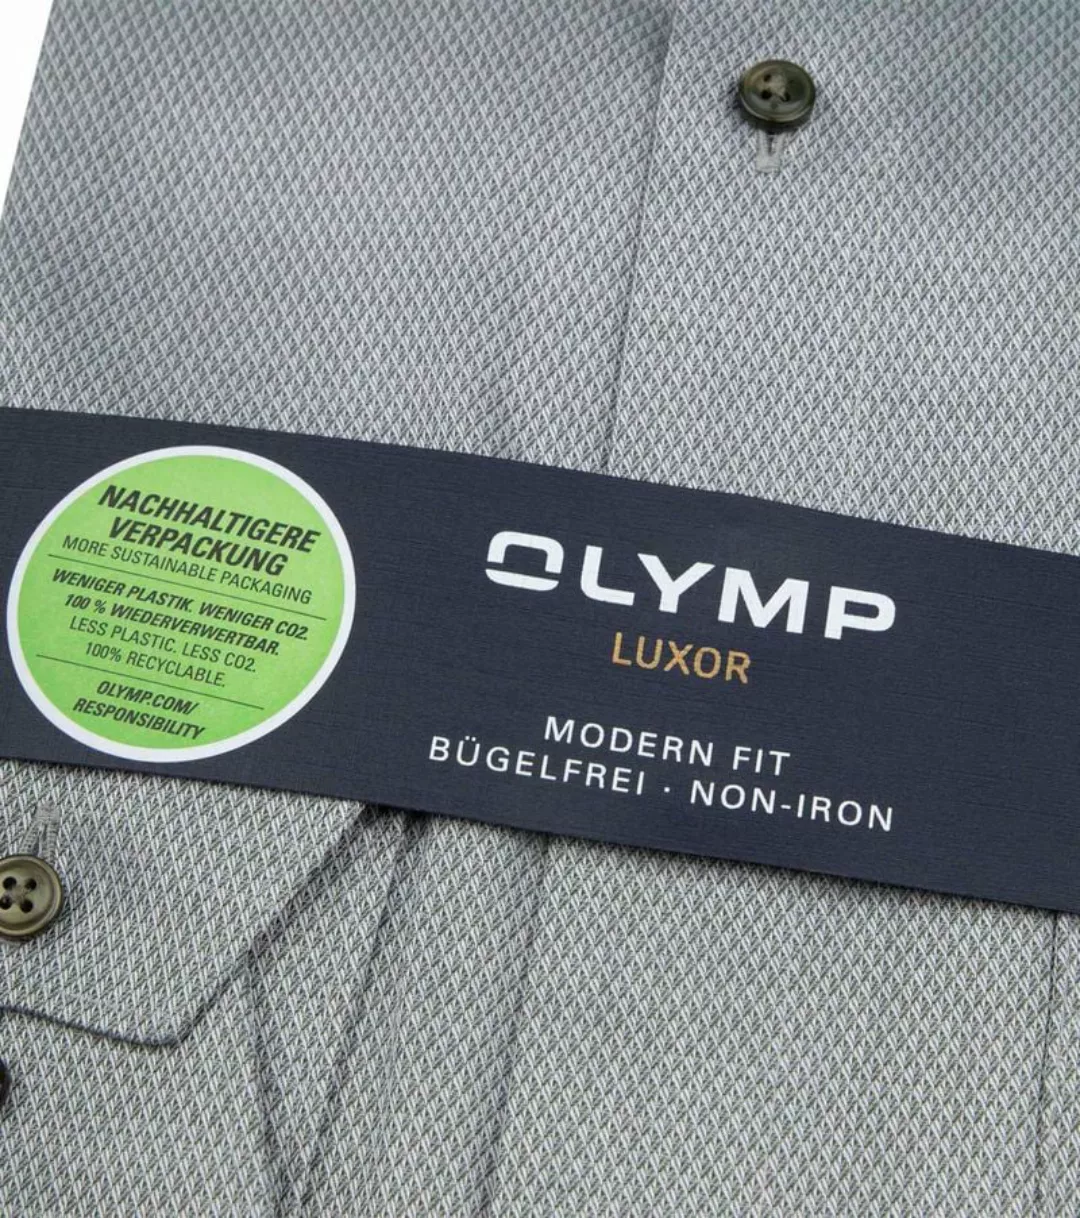 OLYMP Luxor Hemd Stretch Grün - Größe 38 günstig online kaufen